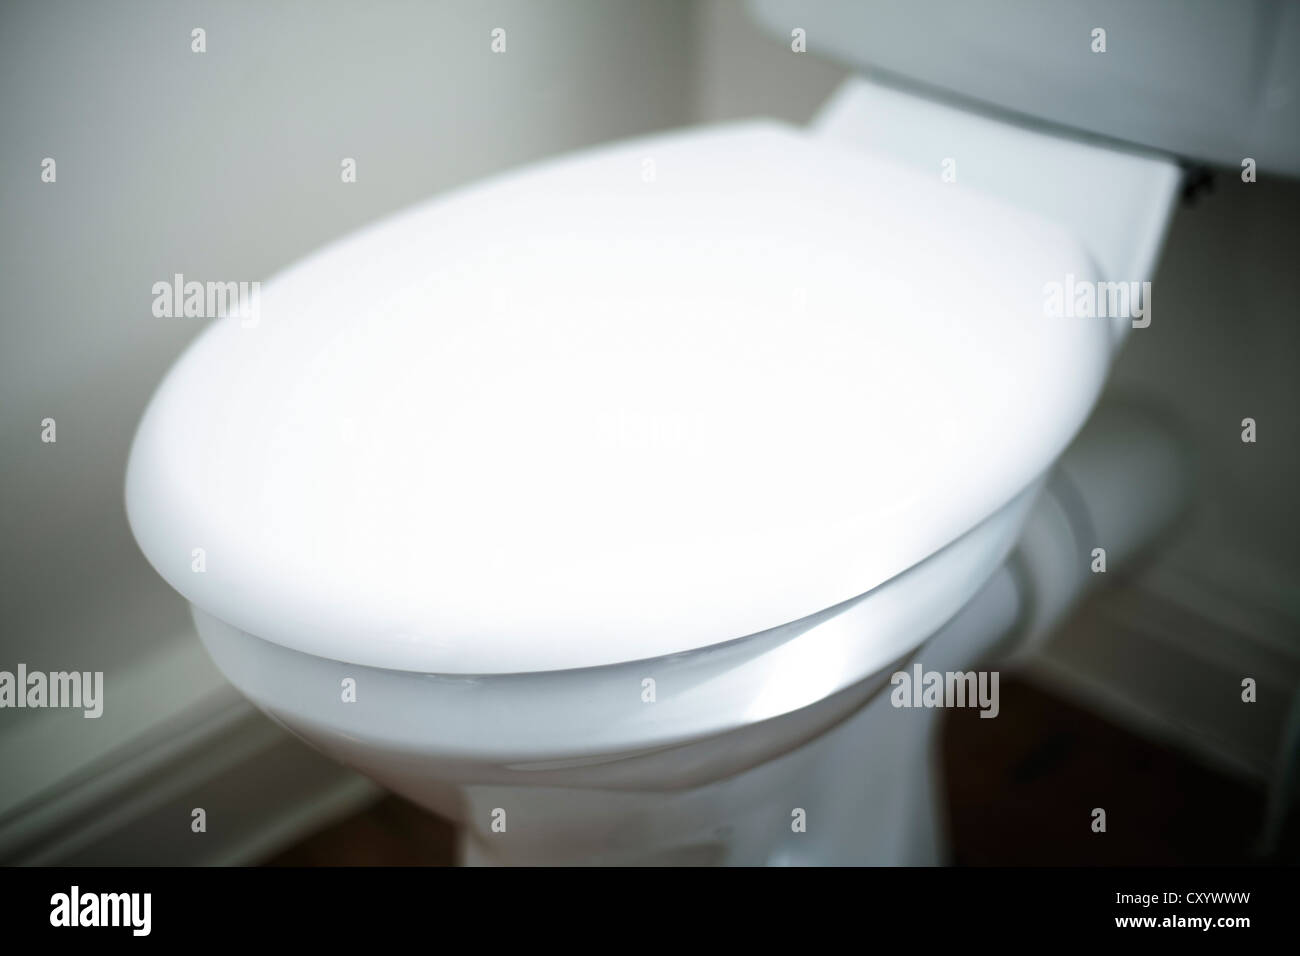 Toilet seat shallow focus Stock Photo